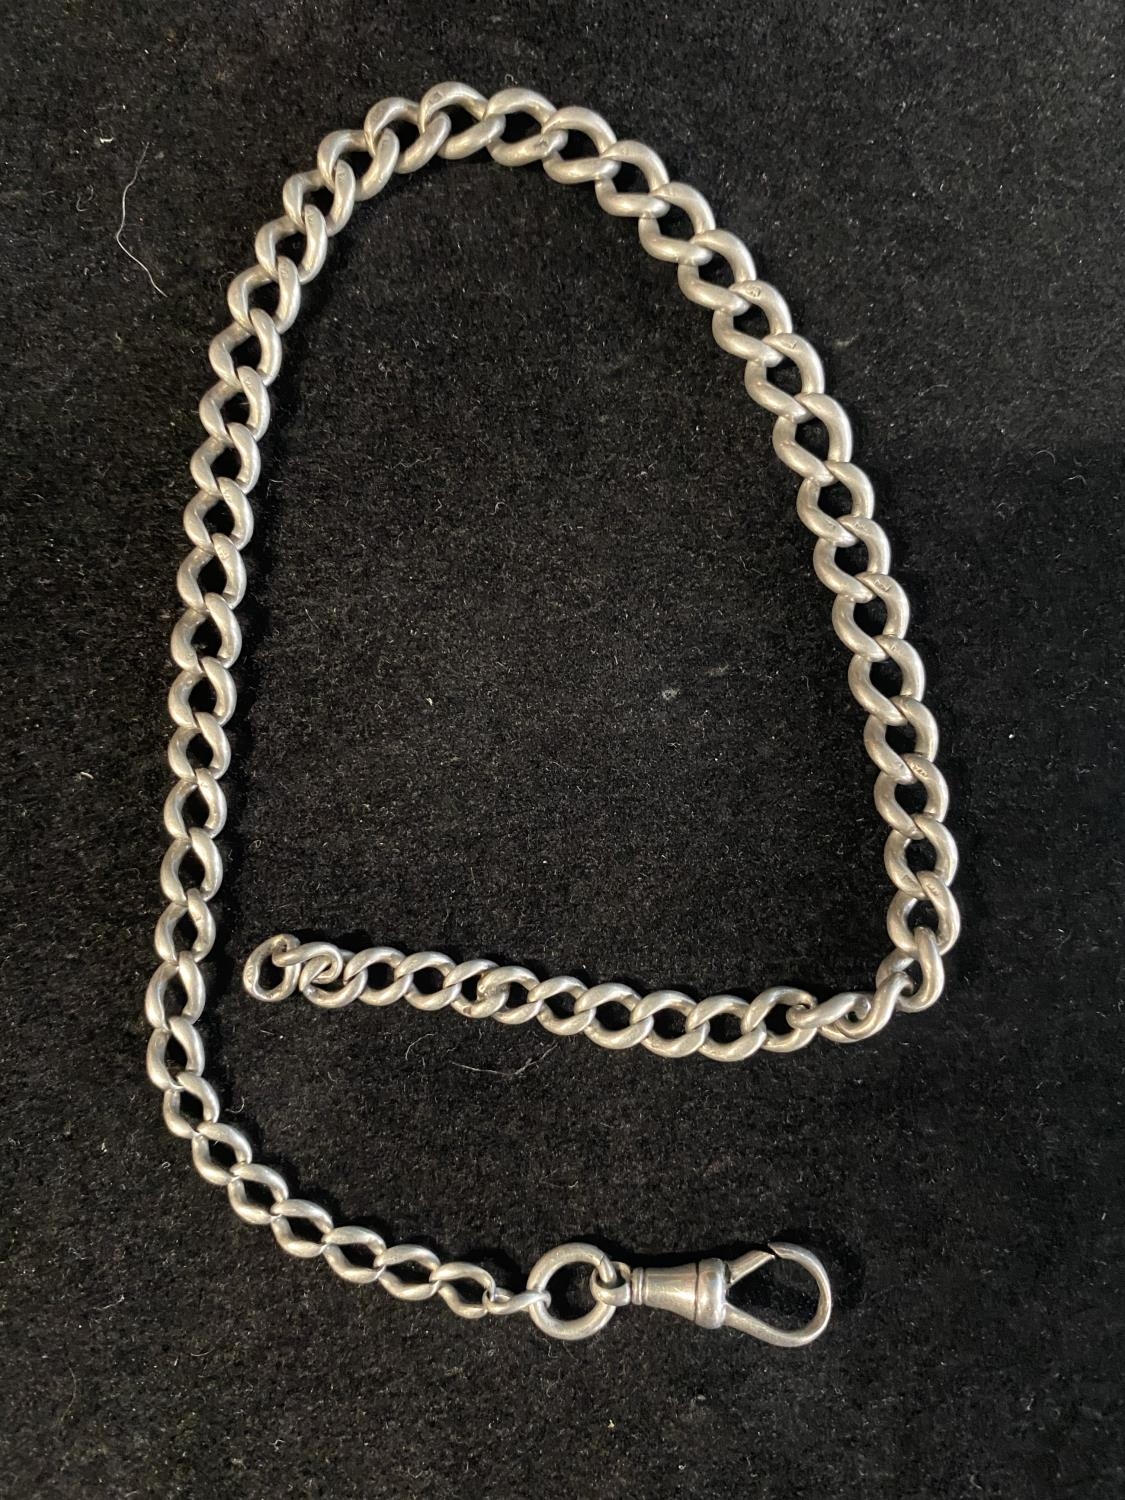 A hallmarked silver Albert chain 27.39g